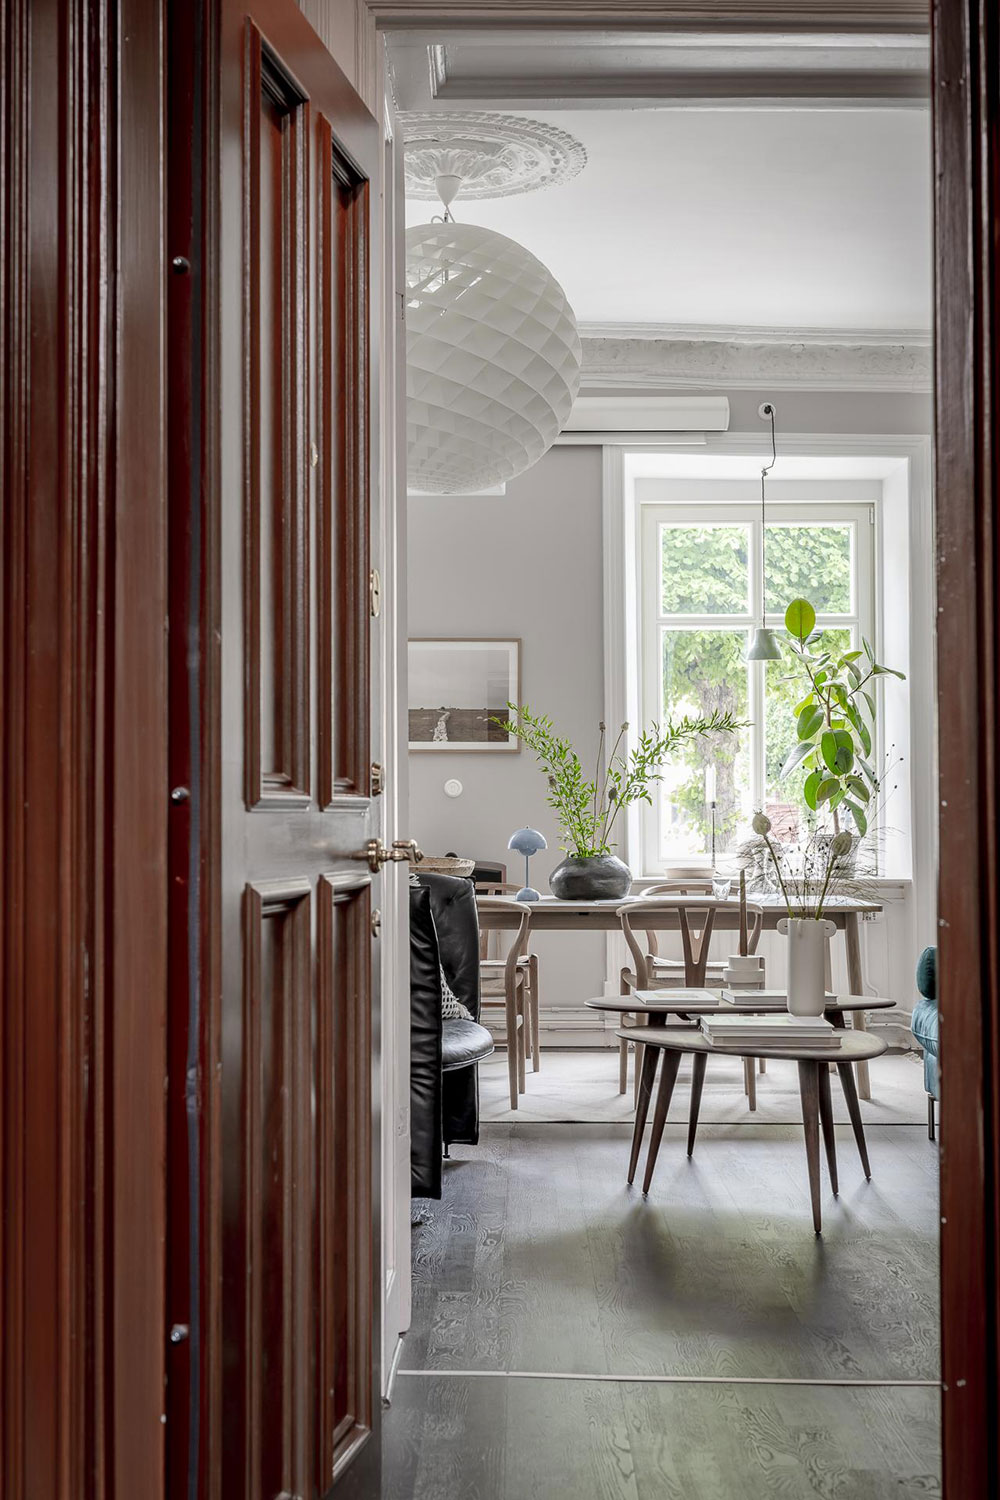 Интересная шведская квартира с необычной кухней и спальней на полууровне (65 кв. м)